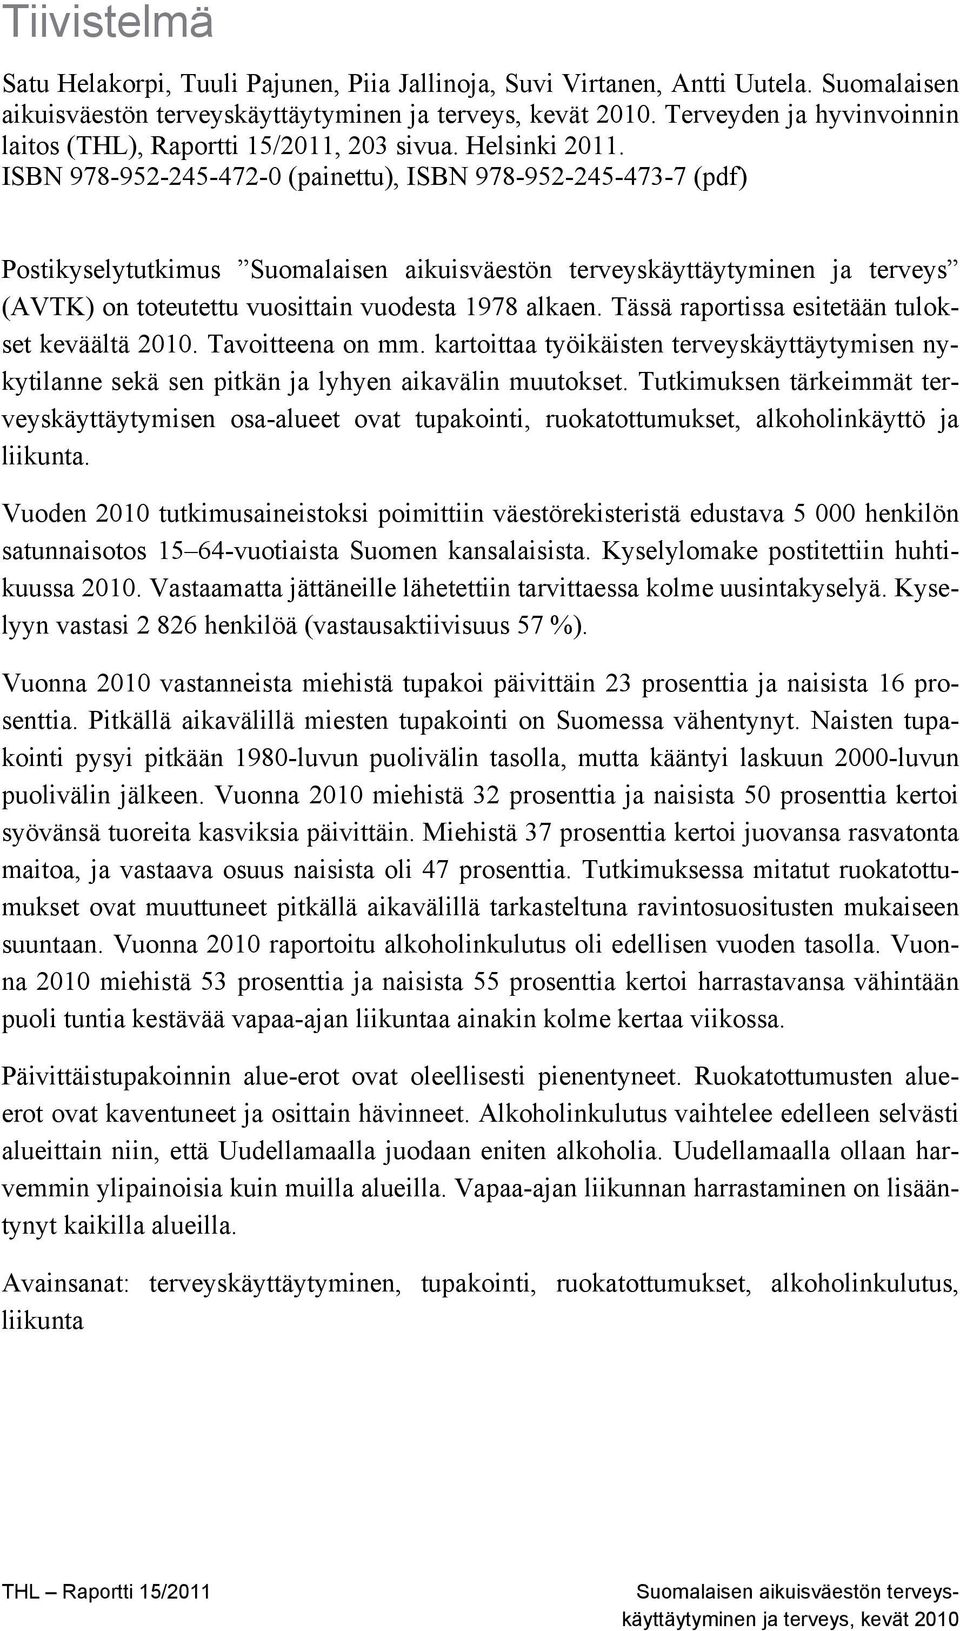 ISBN 978-952-245-472-0 (painettu), ISBN 978-952-245-473-7 (pdf) Postikyselytutkimus Suomalaisen aikuisväestön terveyskäyttäytyminen ja terveys (AVTK) on toteutettu vuosittain vuodesta 1978 alkaen.